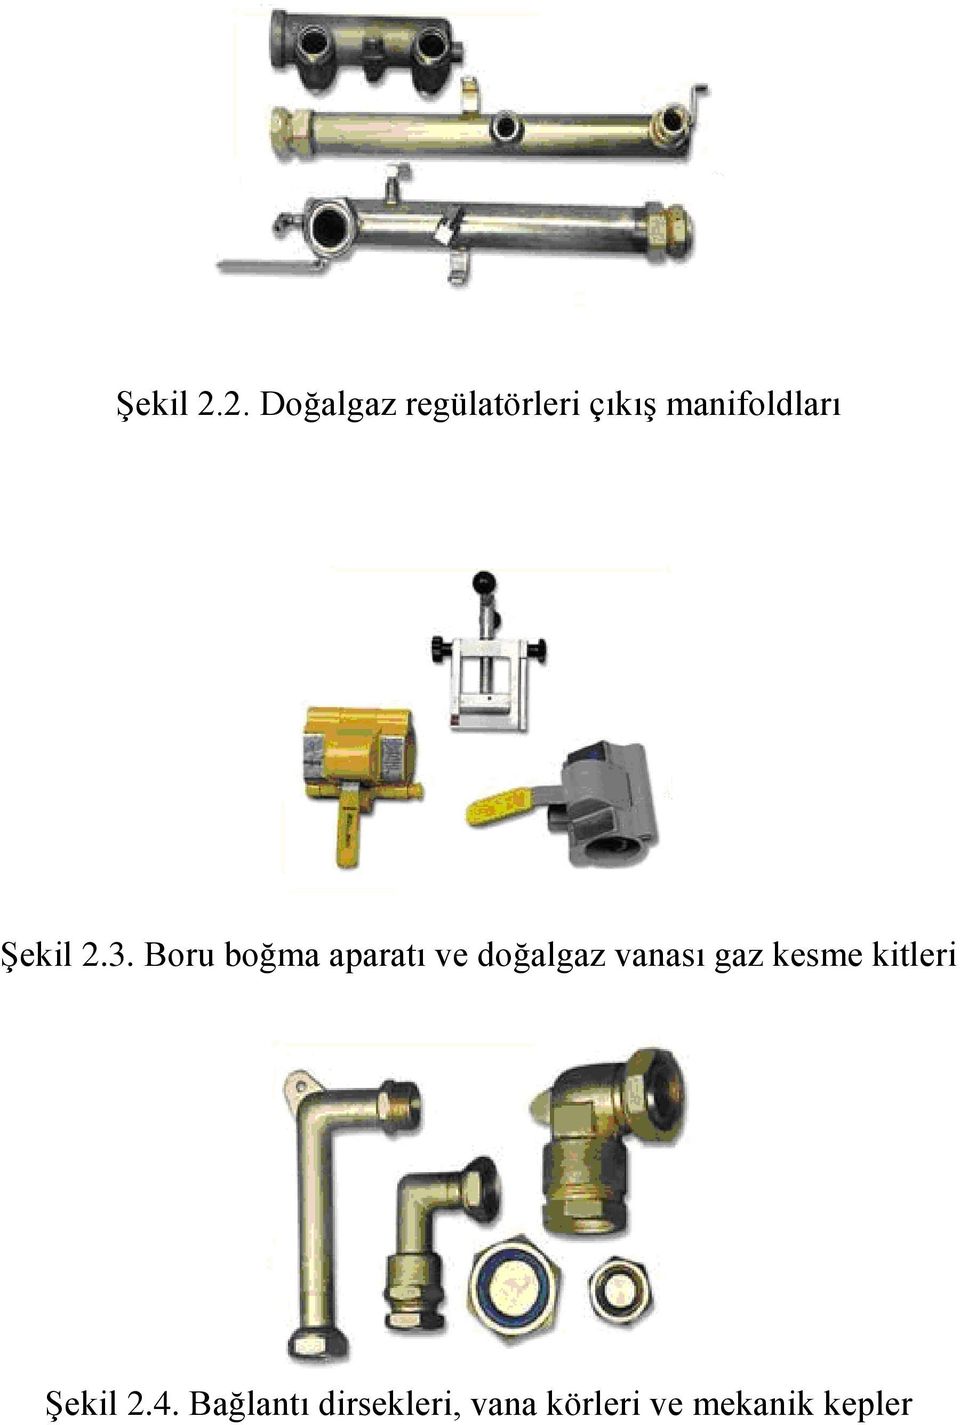 3. Boru boğma aparatı ve doğalgaz vanası gaz